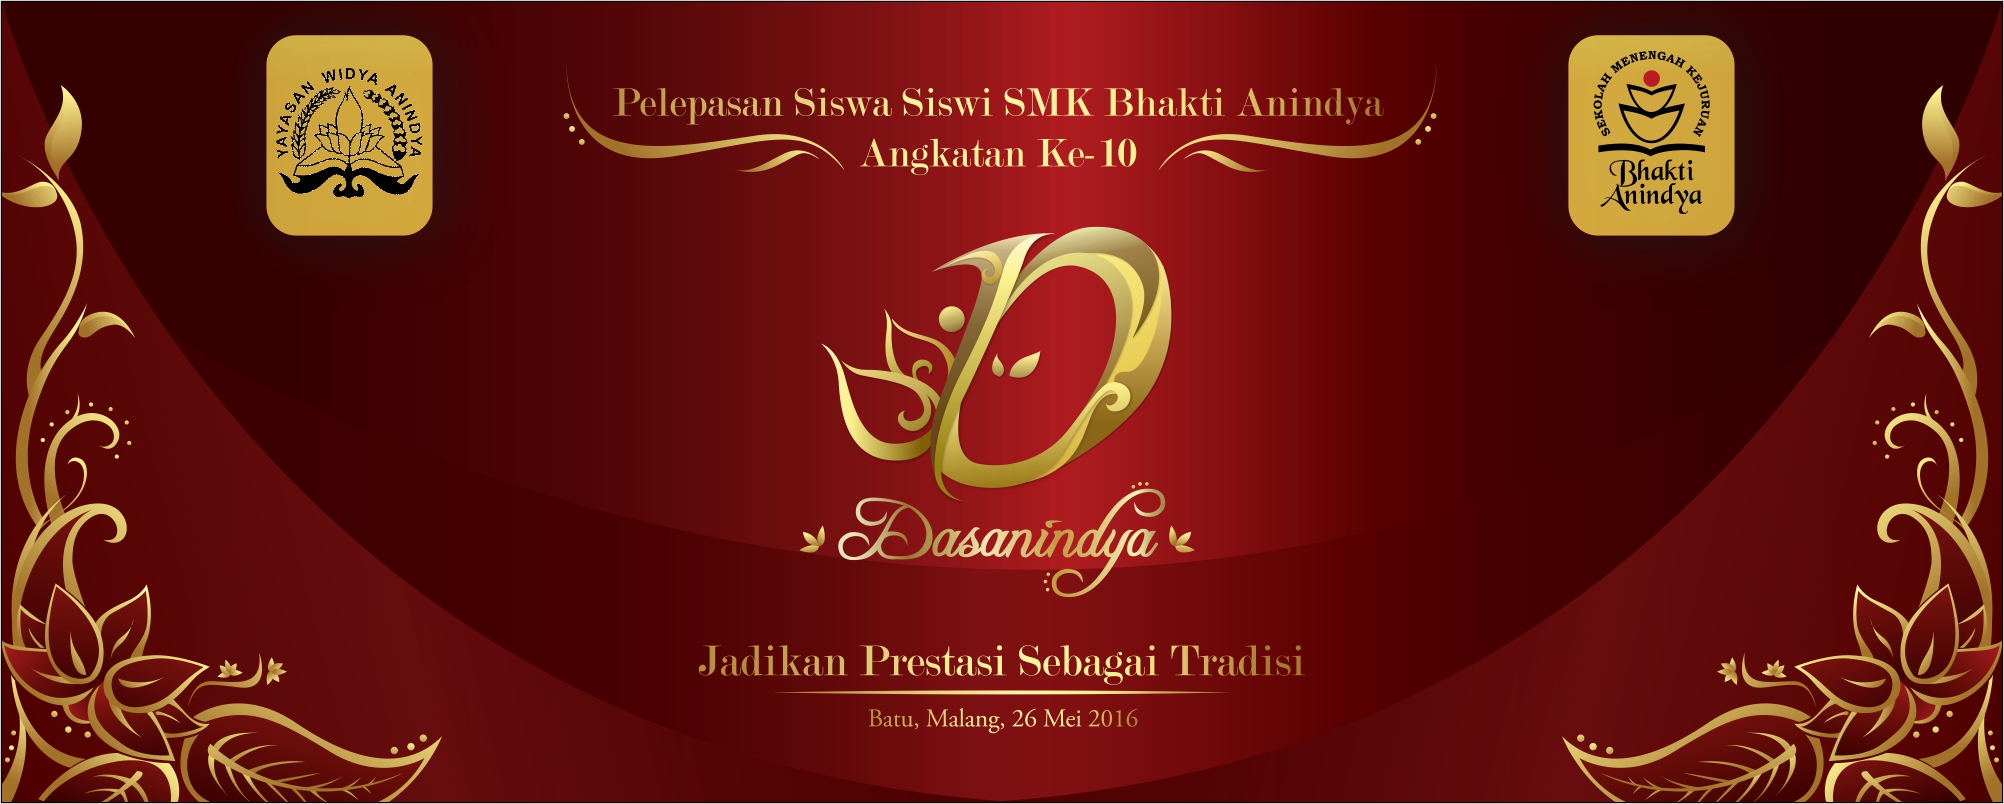 Pelepasan Siswa/i SMK Bhakti Anindya Tangerang Angkatan ke-10 "Dasanindya"